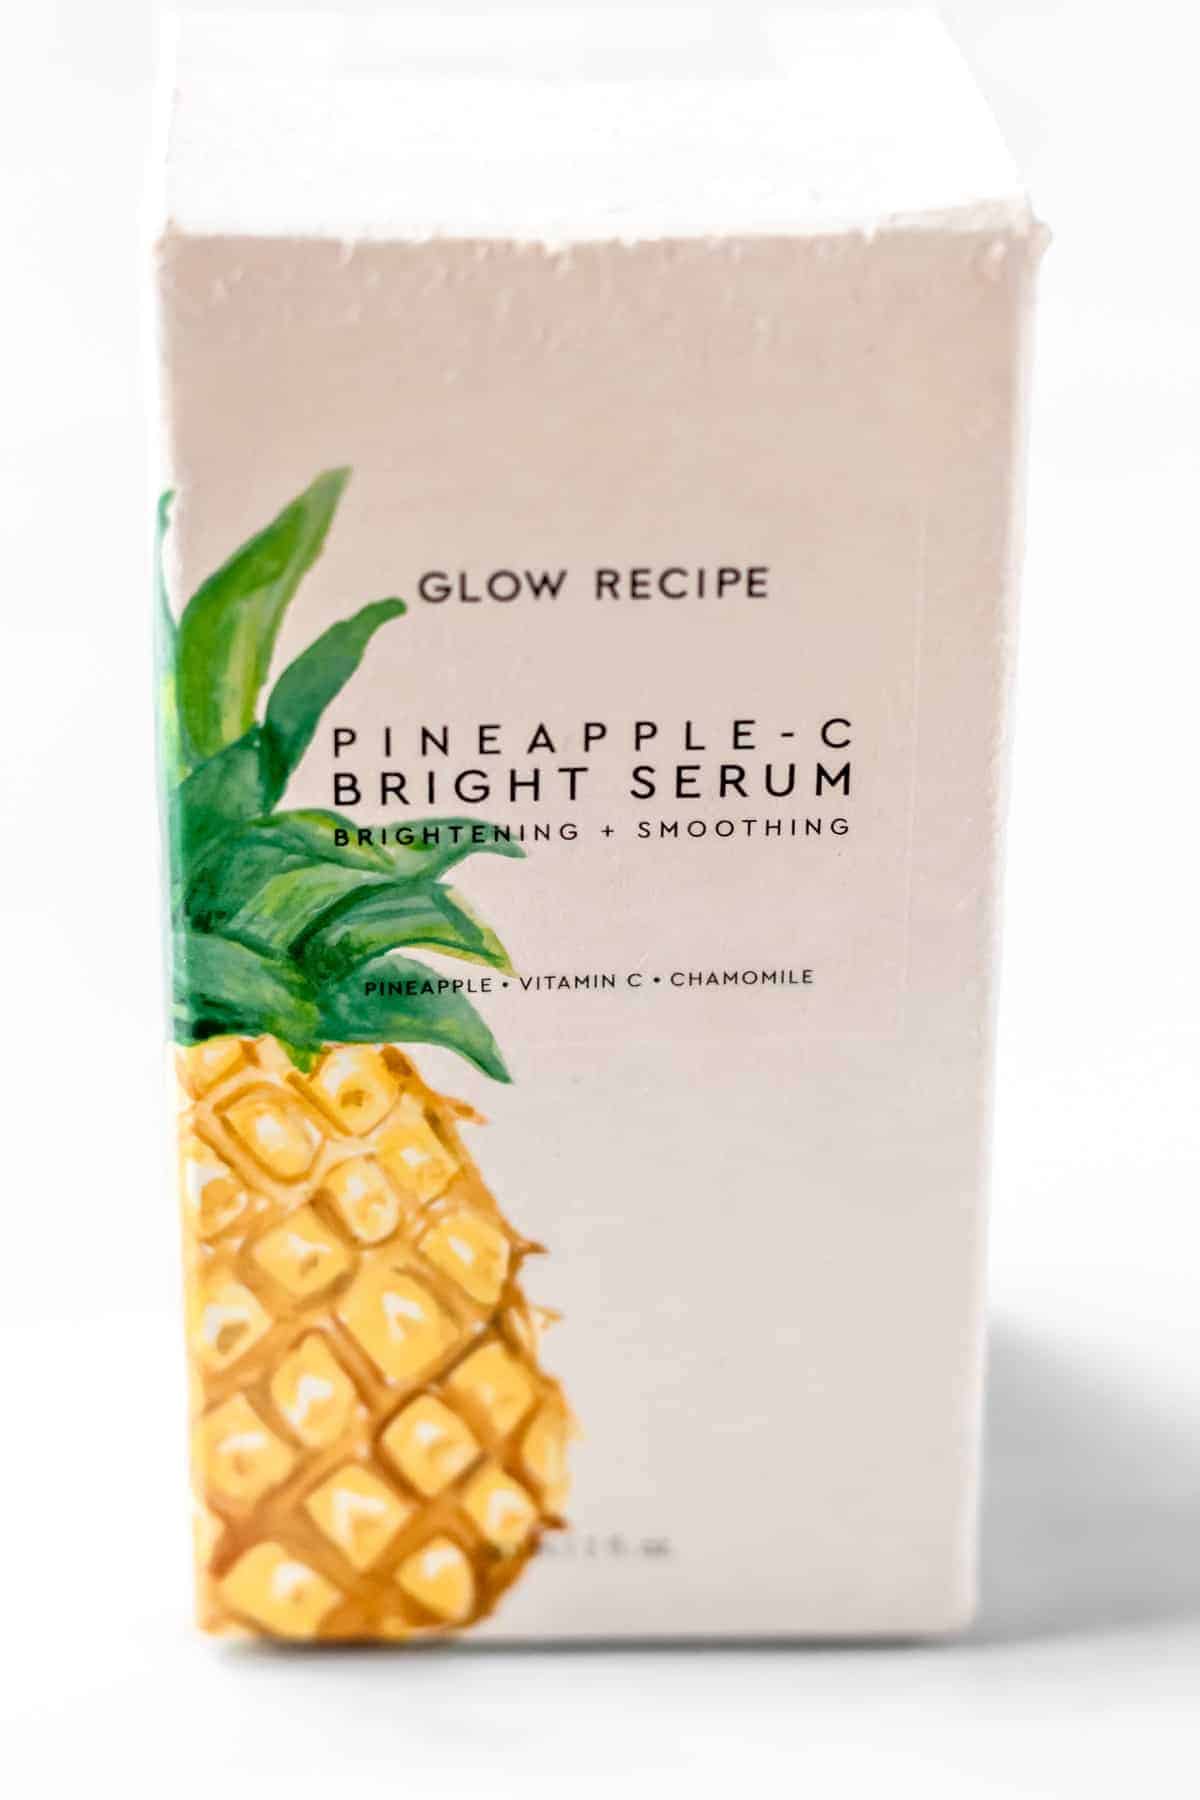 Glow Recipe Pineapple-C Bright Serum box.